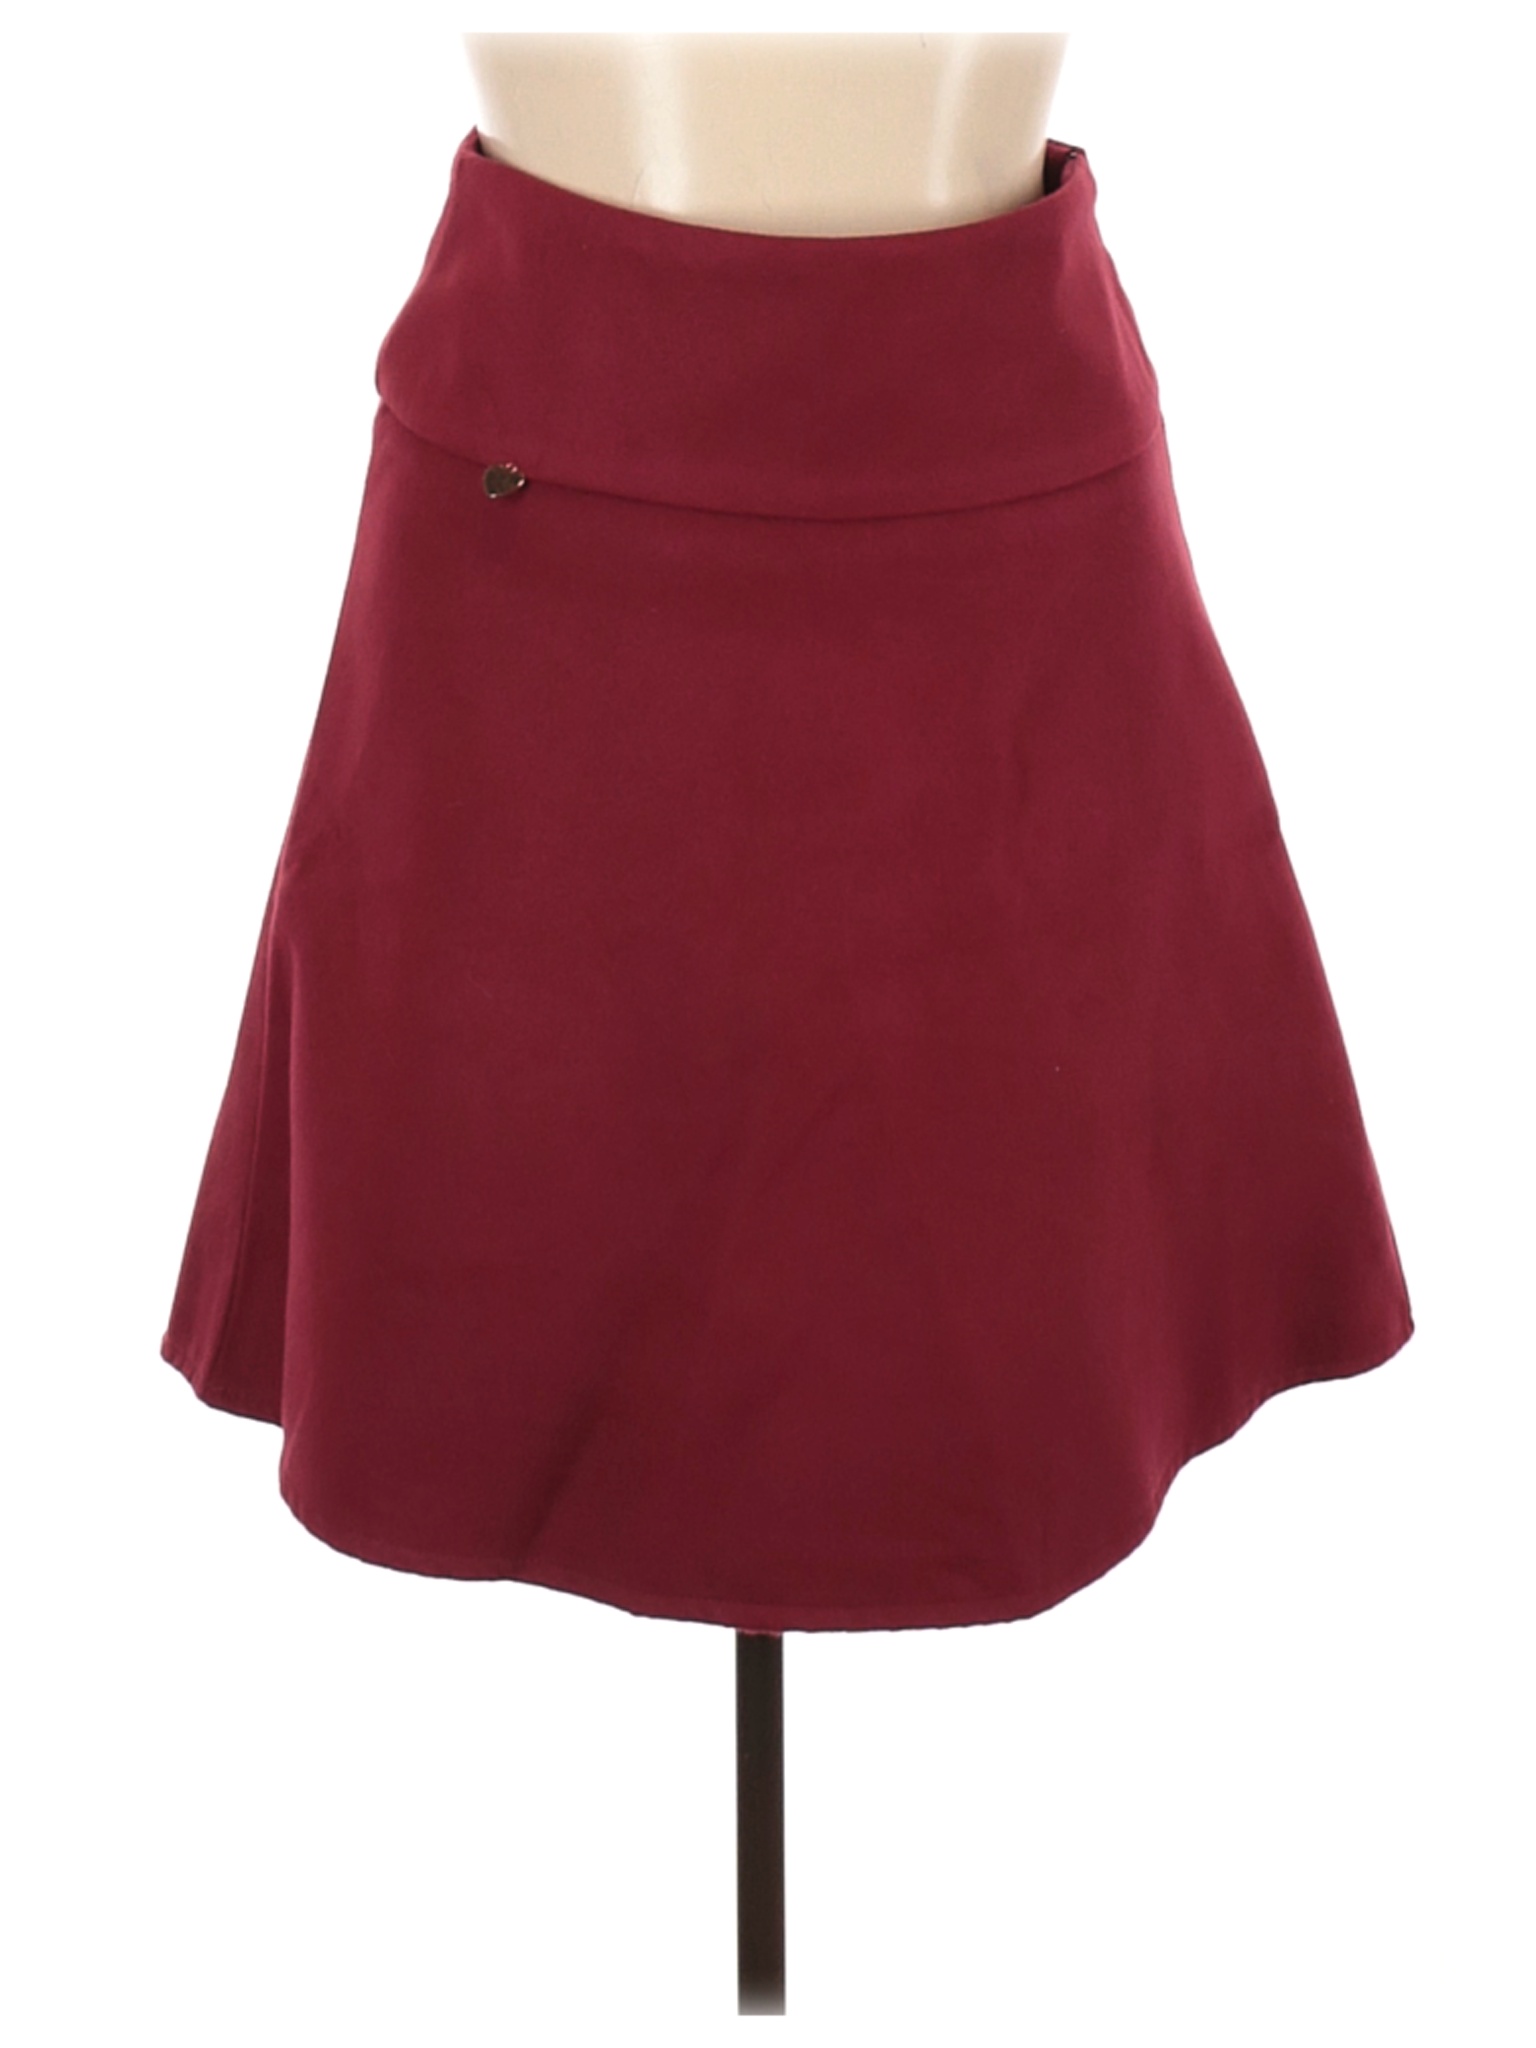 Misslook Women Red Casual Skirt XL | eBay